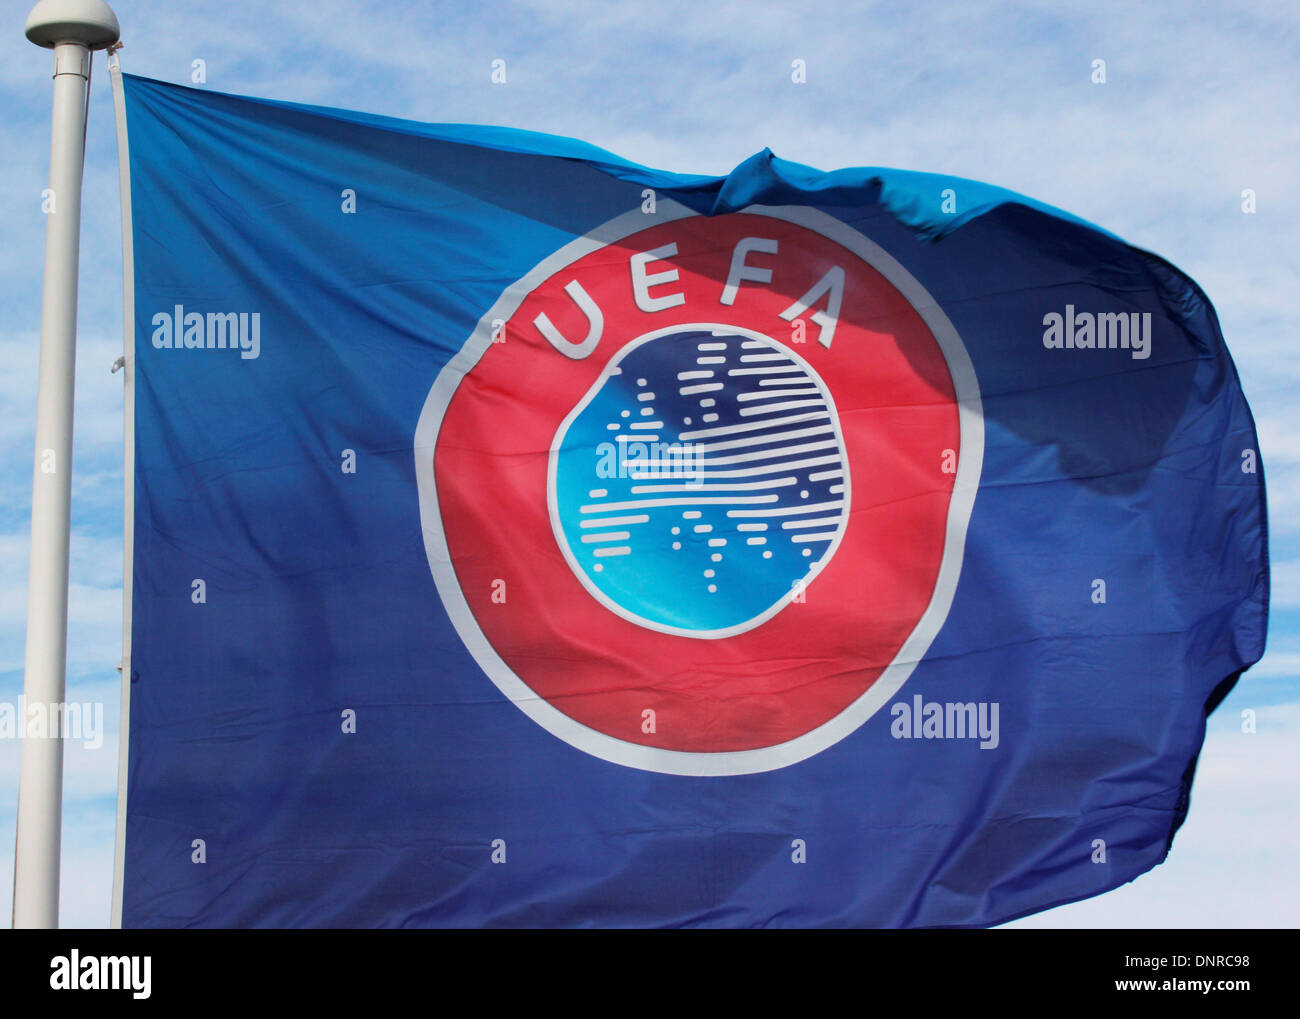 Bandera y emblema de la UEFA Foto de stock